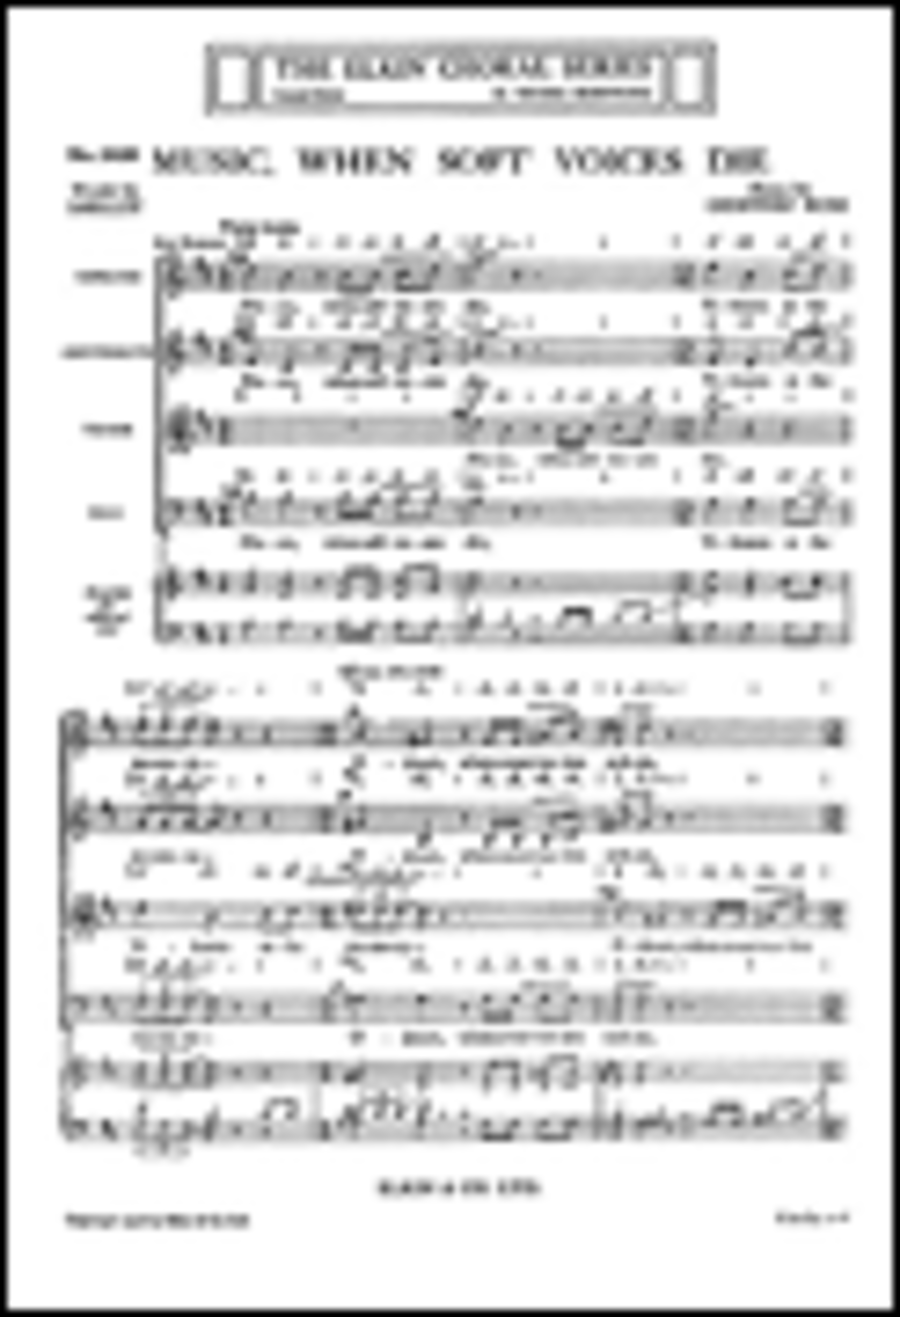 Geoffrey Bush: Music When Soft Voices Die for SATB Chorus